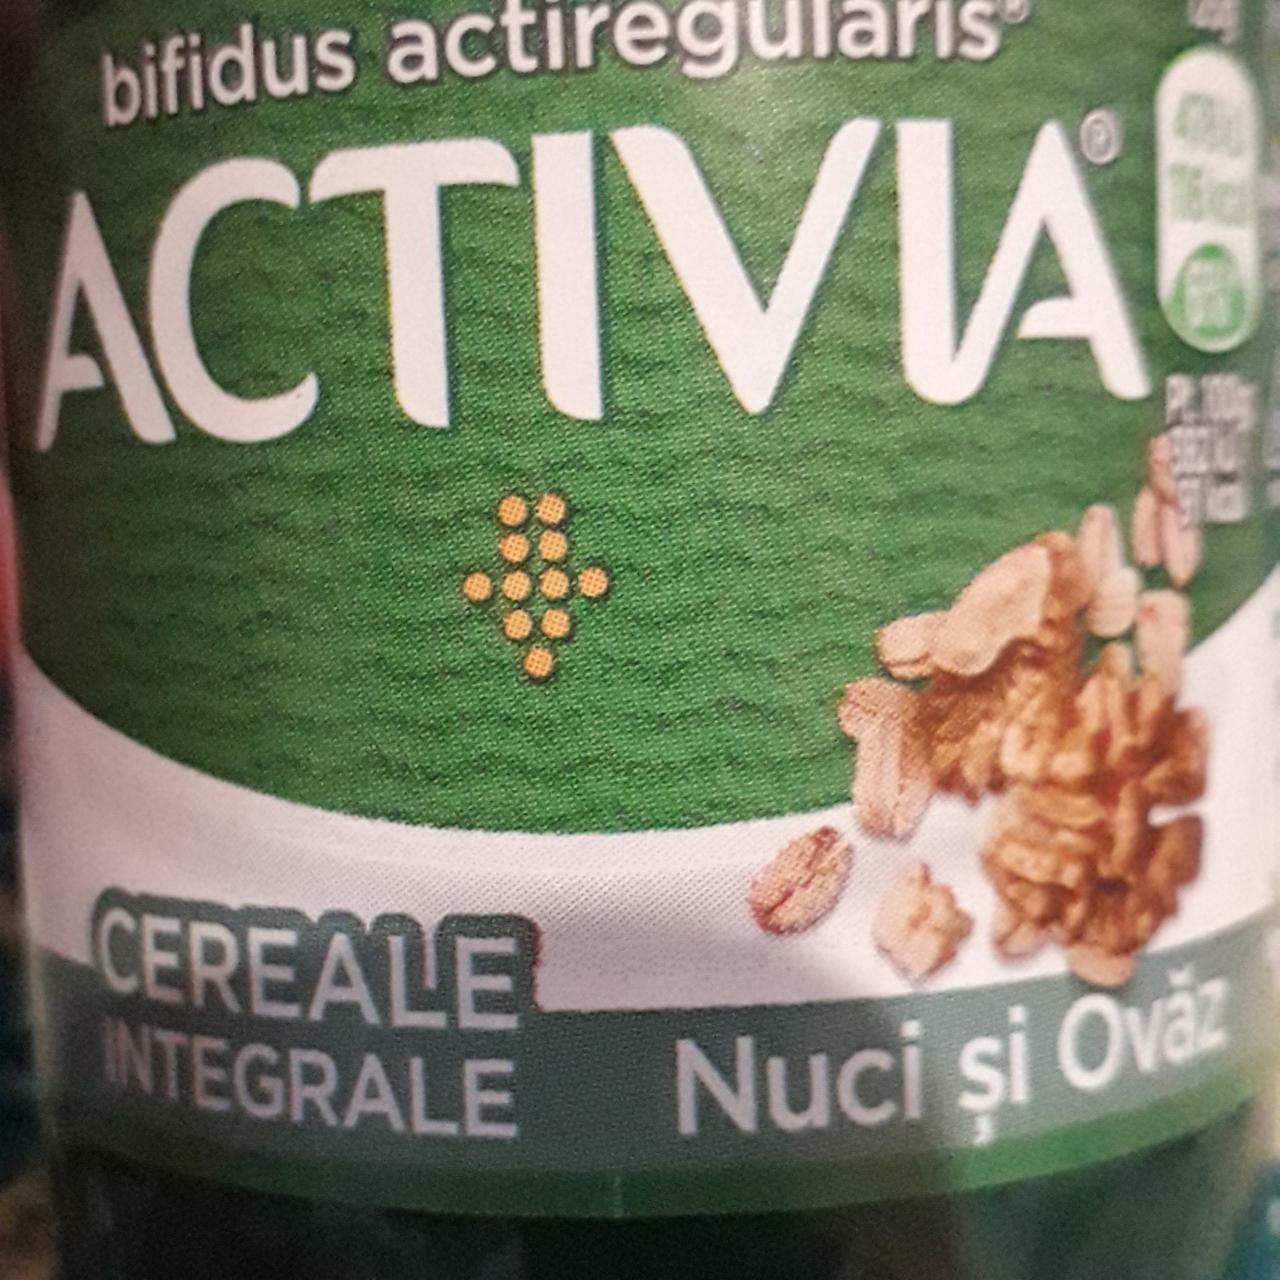 Фото - йогурт злаки-грецкий орех Activia